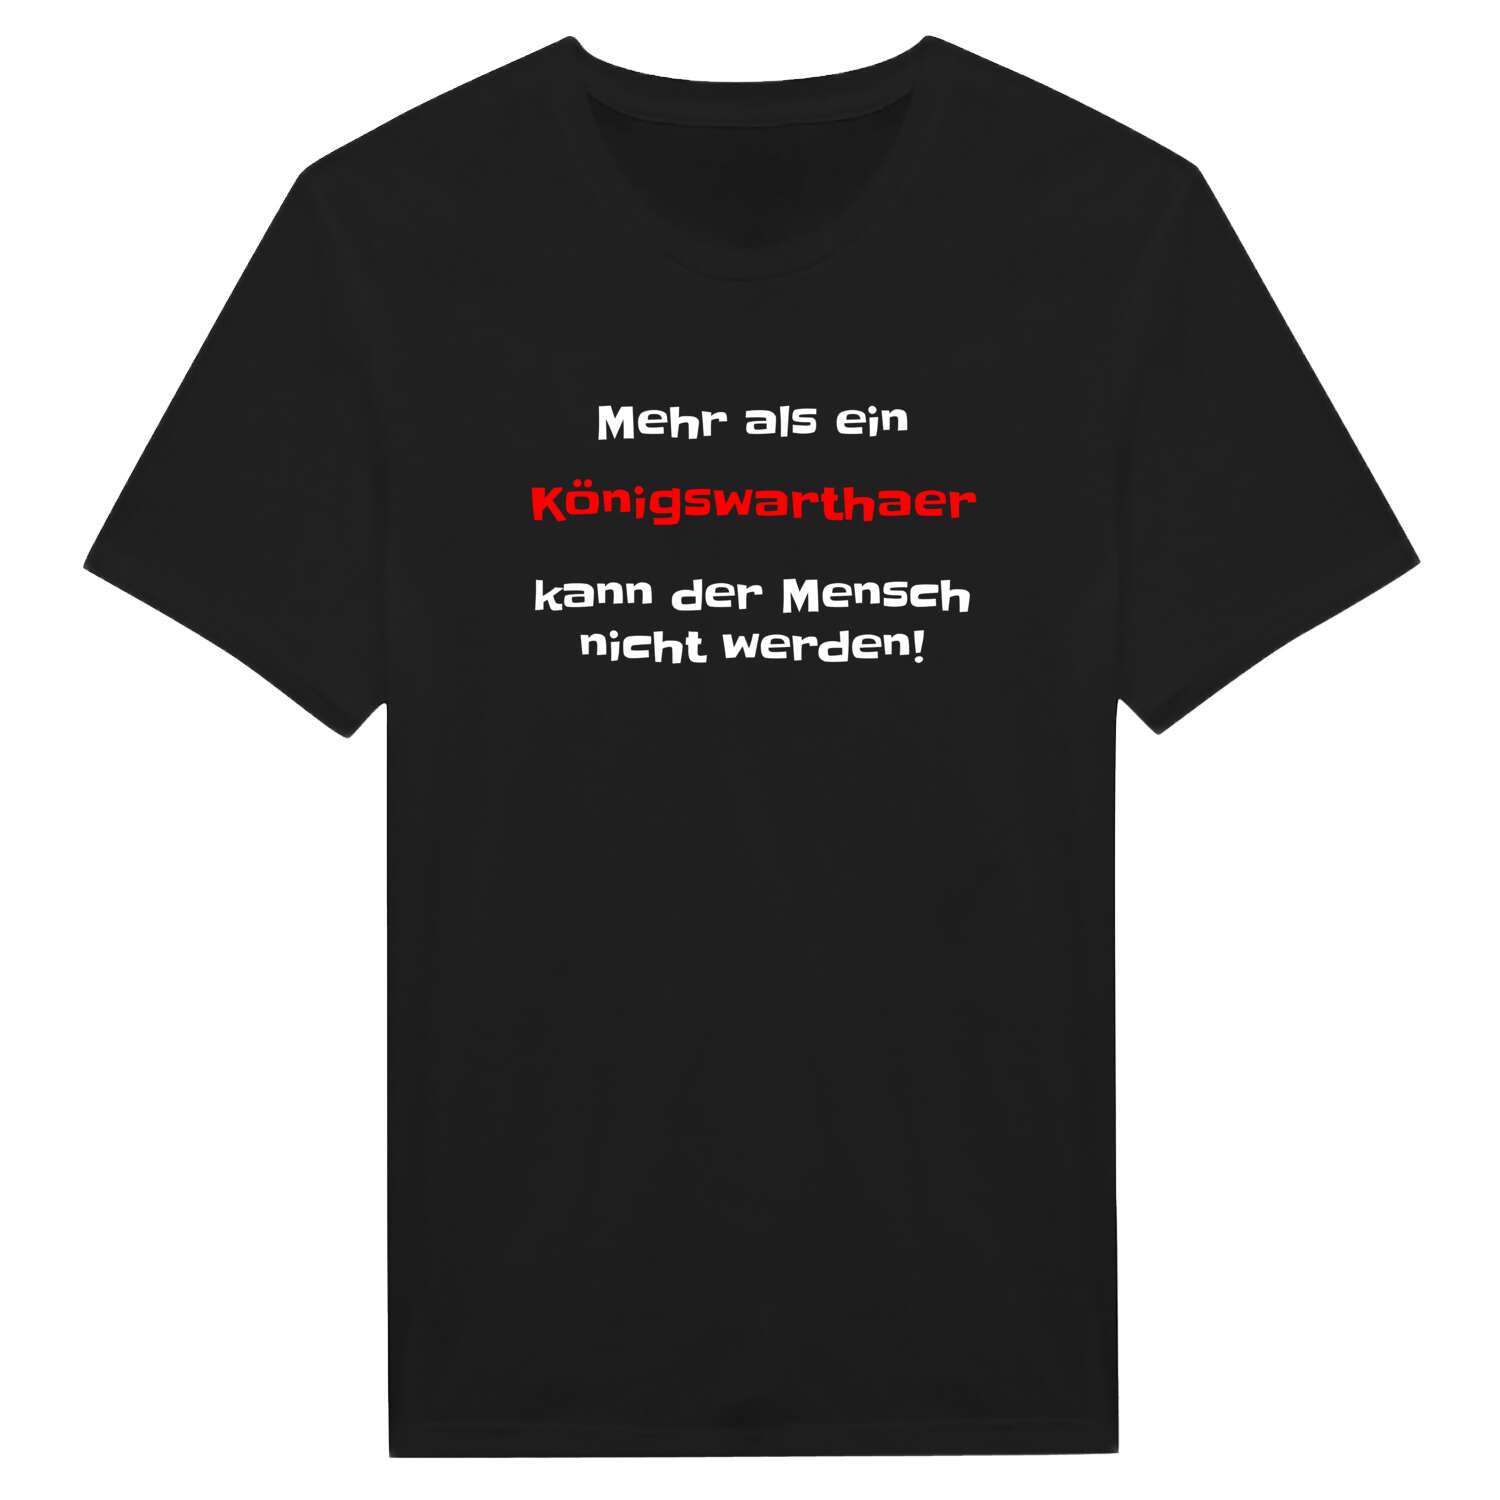 Königswartha T-Shirt »Mehr als ein«